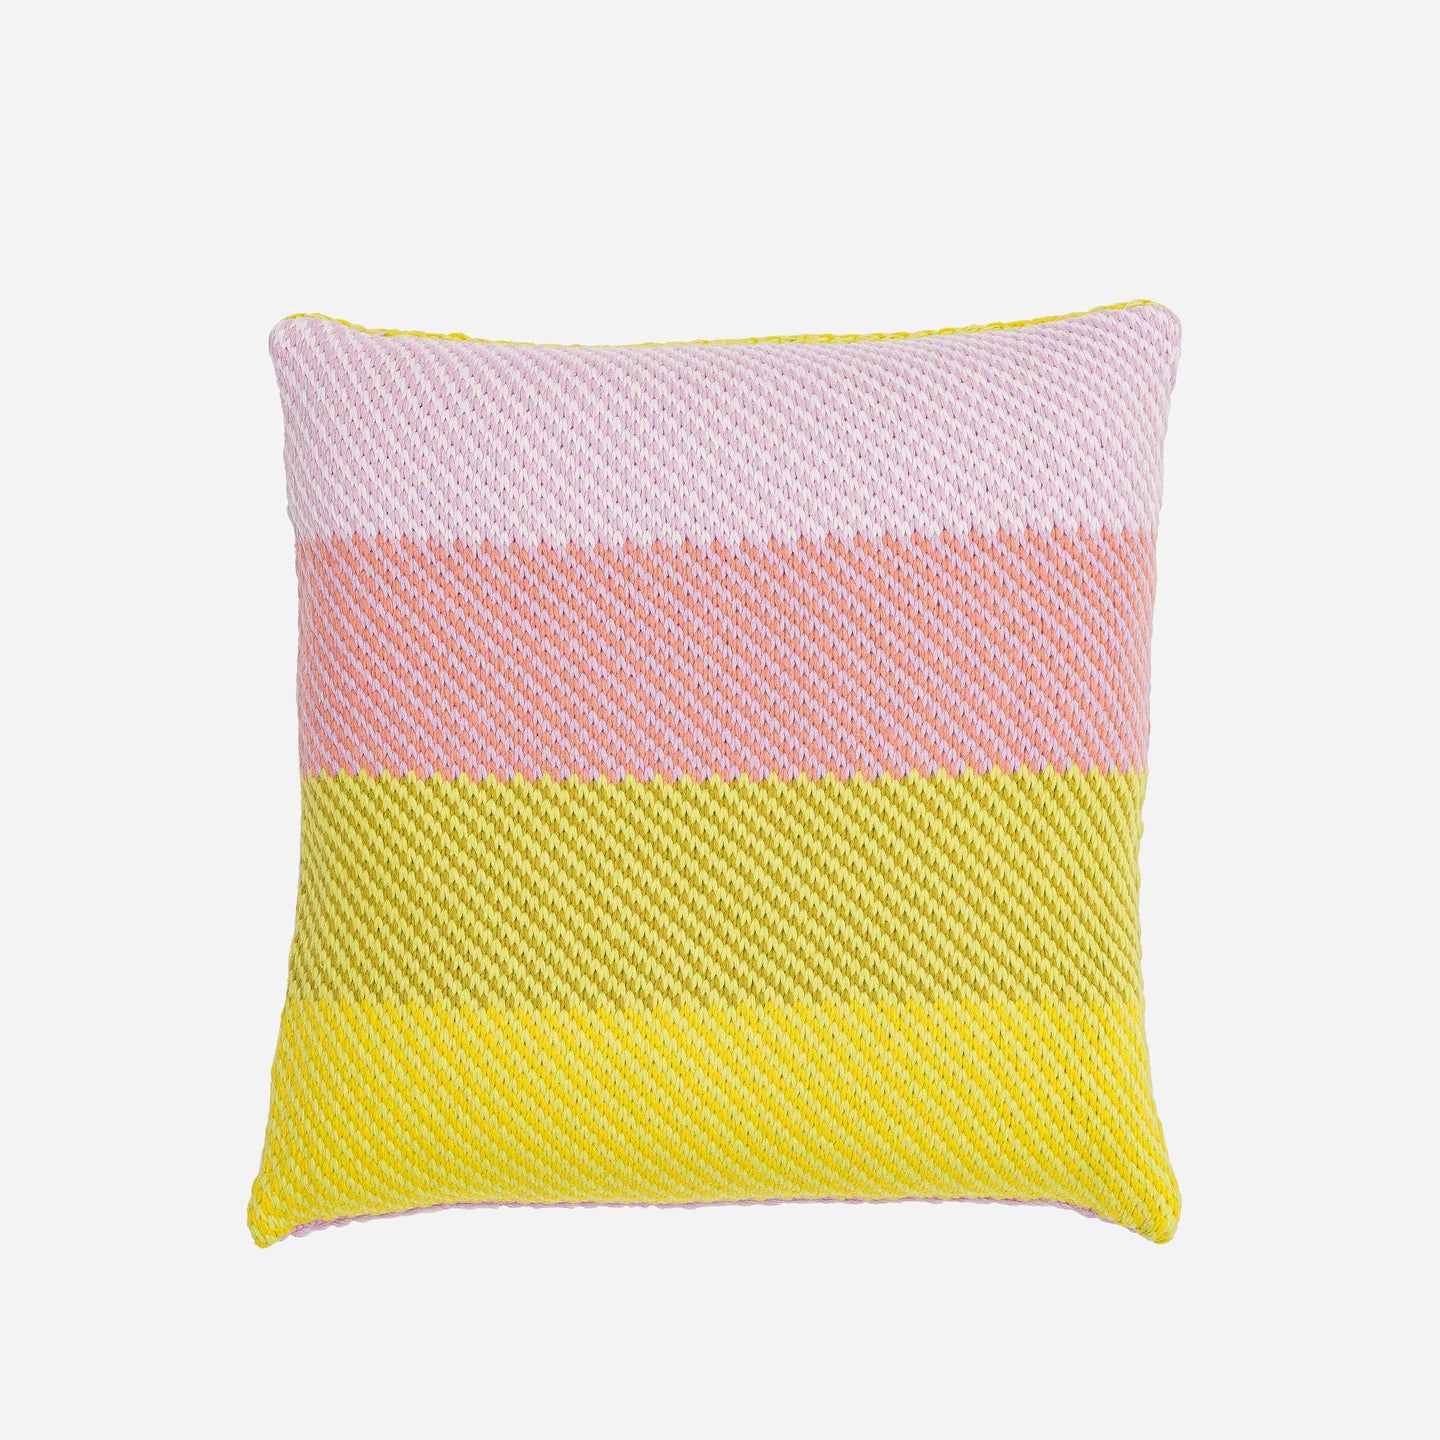 Slant Stripes Diagonal Knit Pillow Cover Gradient